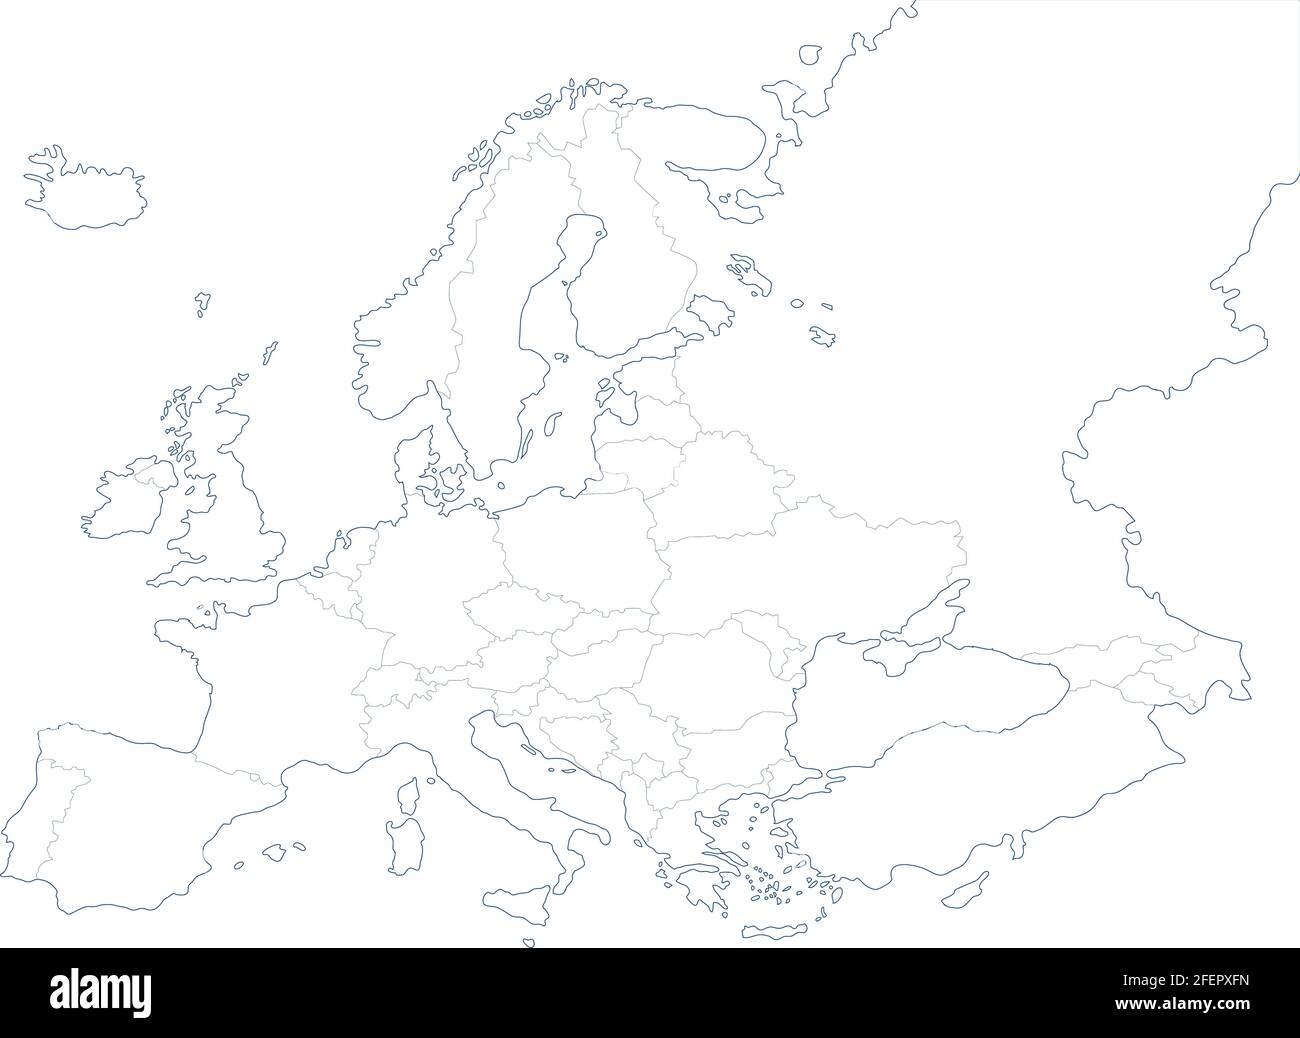 Mappa politica dell'Europa su sfondo bianco. Illustrazione vettoriale Illustrazione Vettoriale